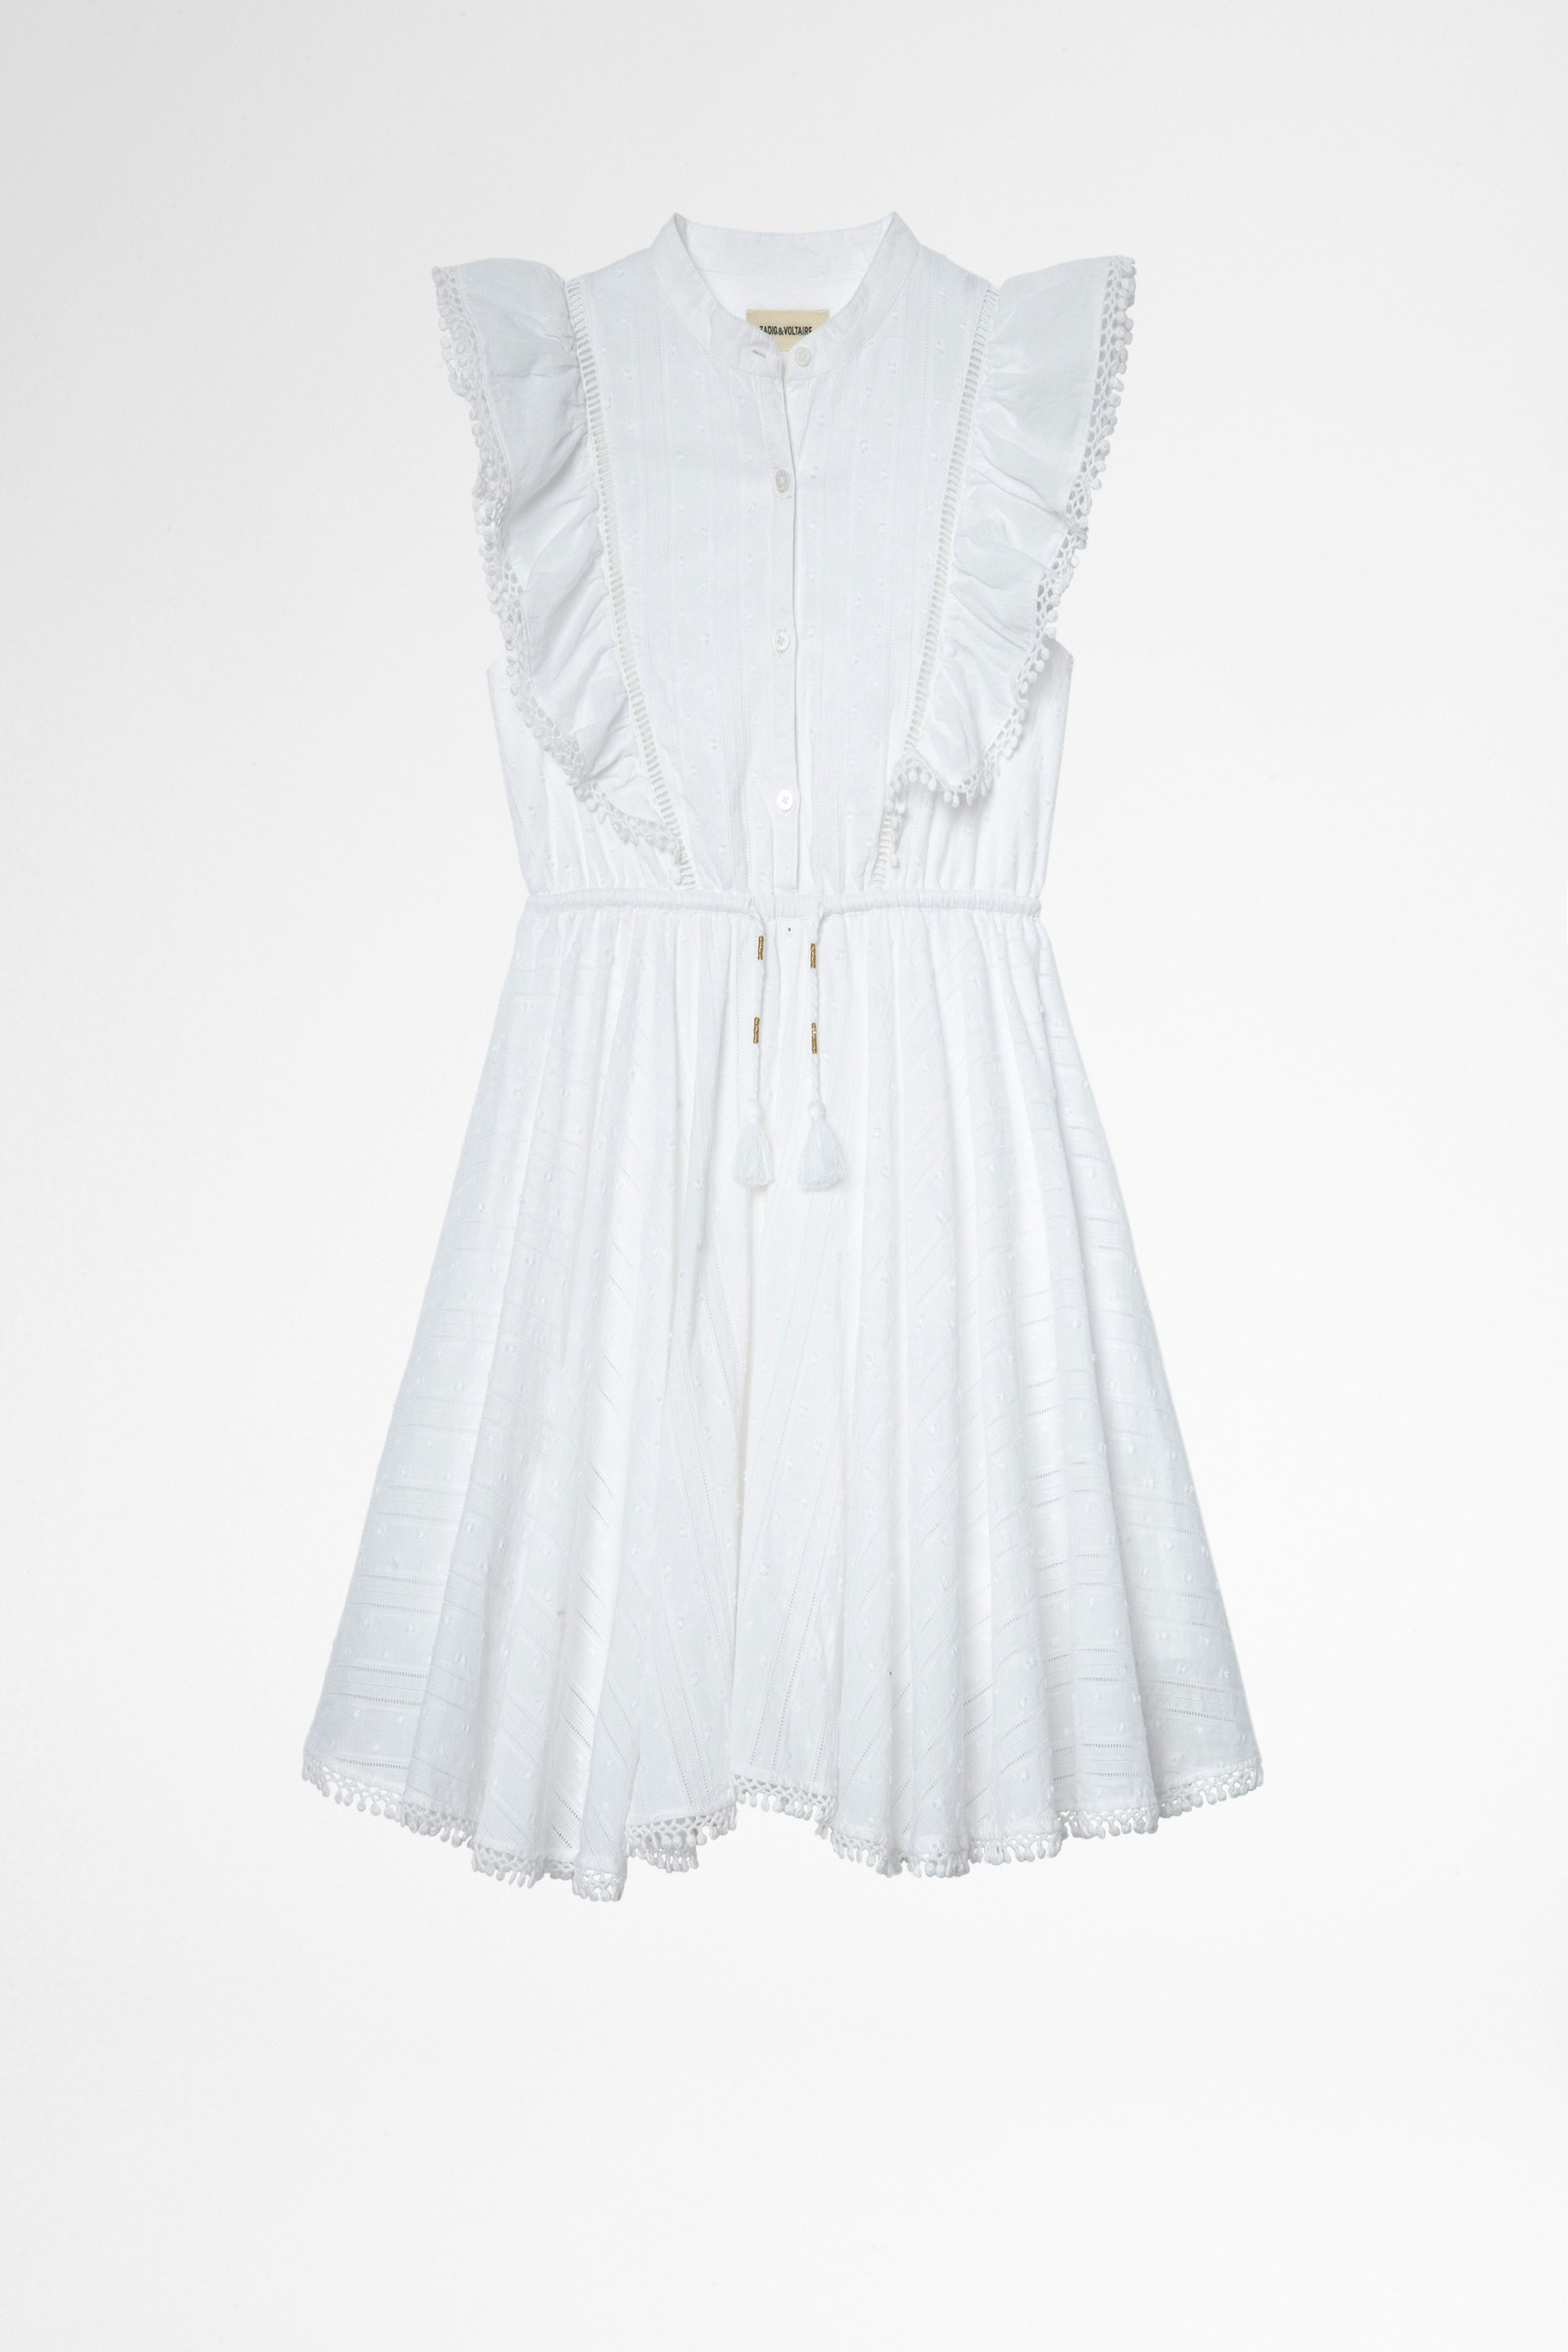 Vestido Ranil Infantil Vestido blanco de algodón infantil